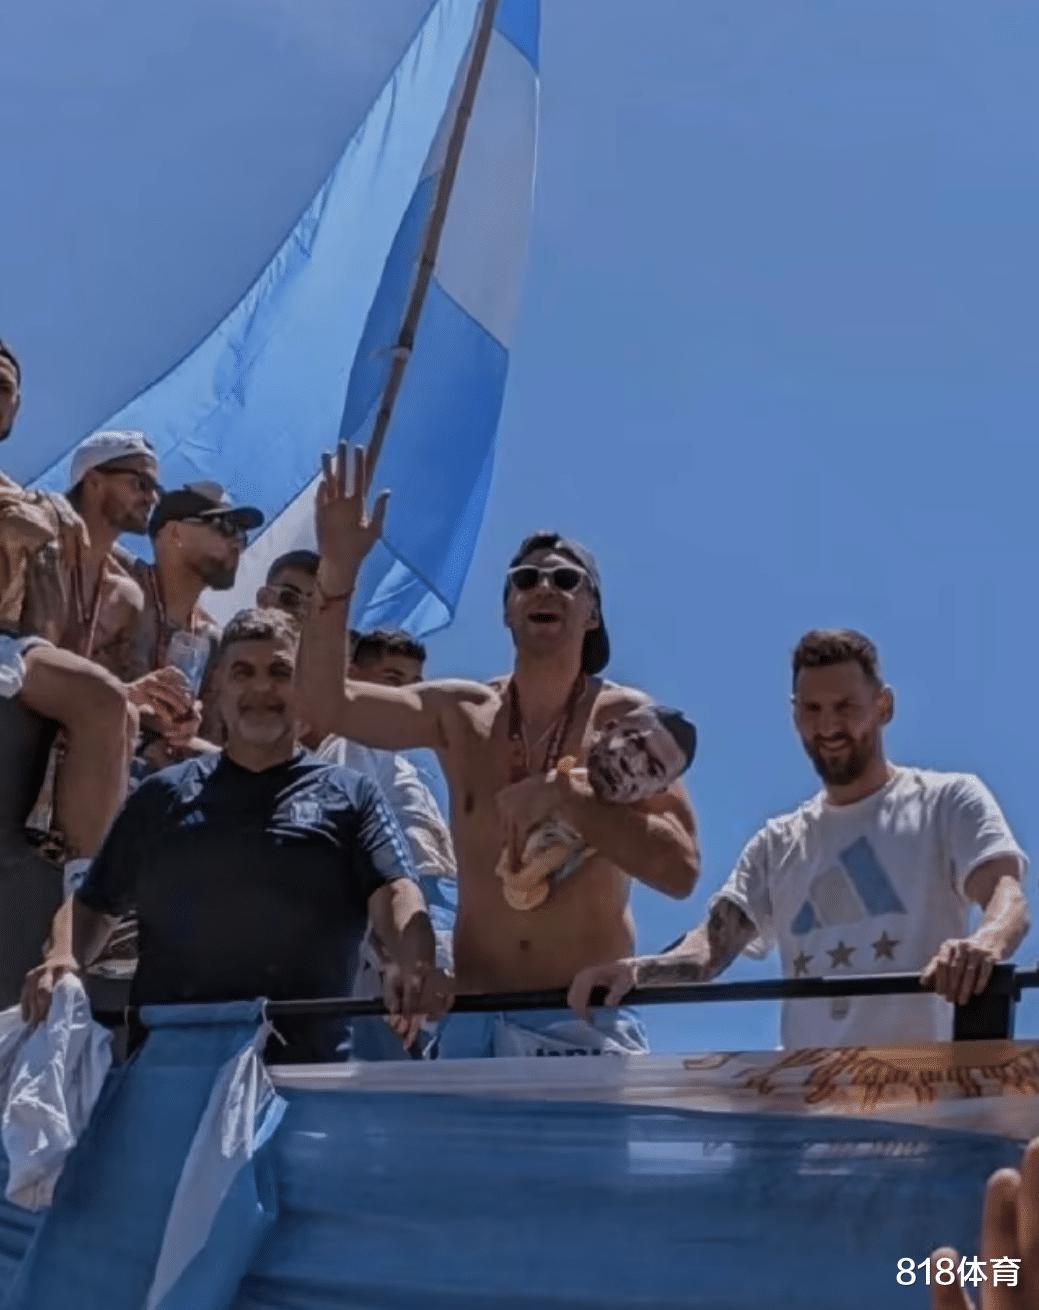 法国体育部长: 马丁内斯和阿根廷队的庆祝粗俗下流 配不上世界杯(3)